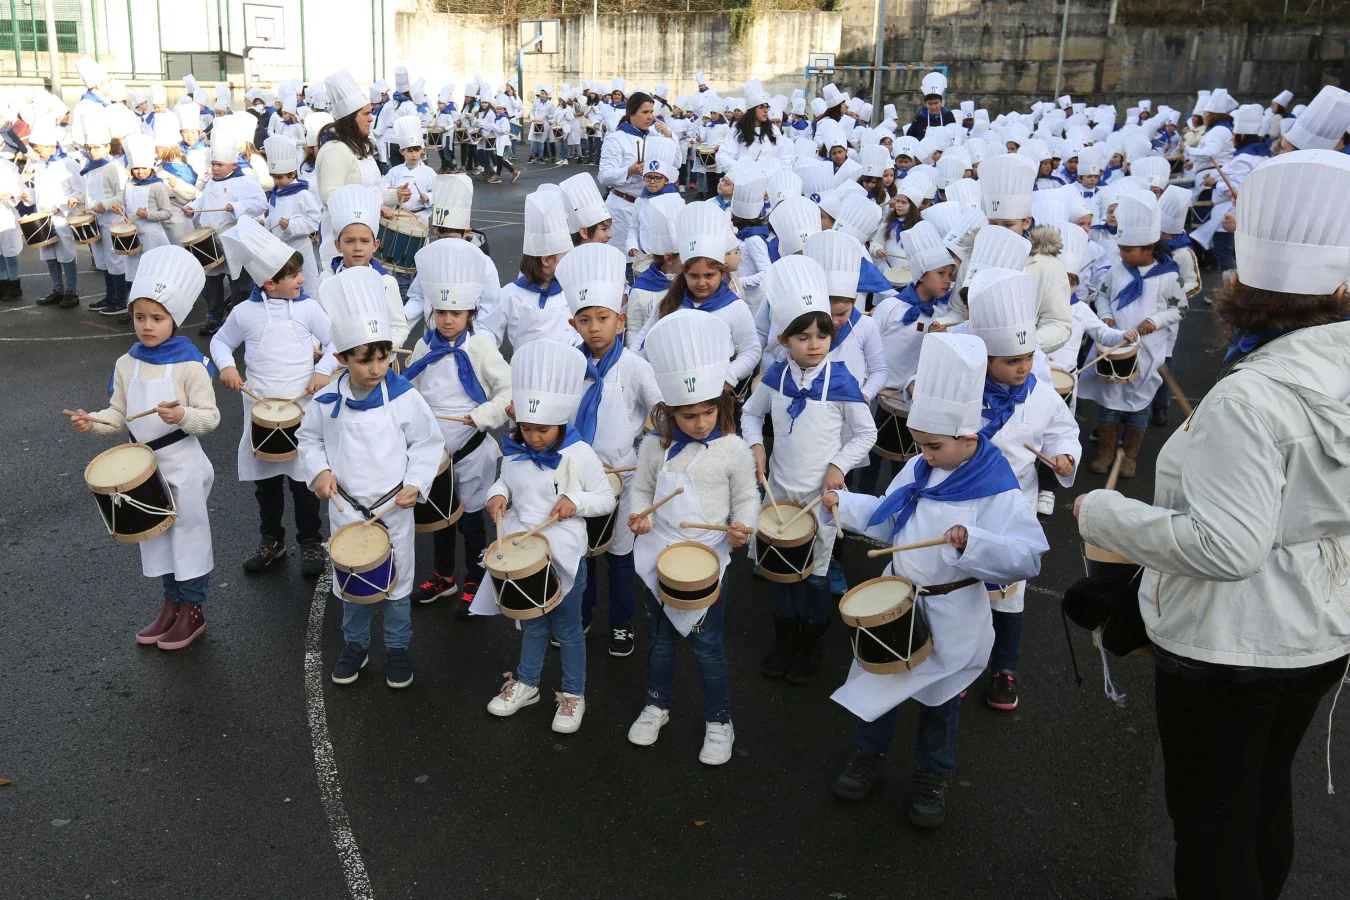 Los escolares de Zuhaisti, en Gros, de Santa Teresa en el Antiguo y de la ikastola de Altza han hecho sonar son tambores y barriles y han adelantado la fiesta de San Sebastián